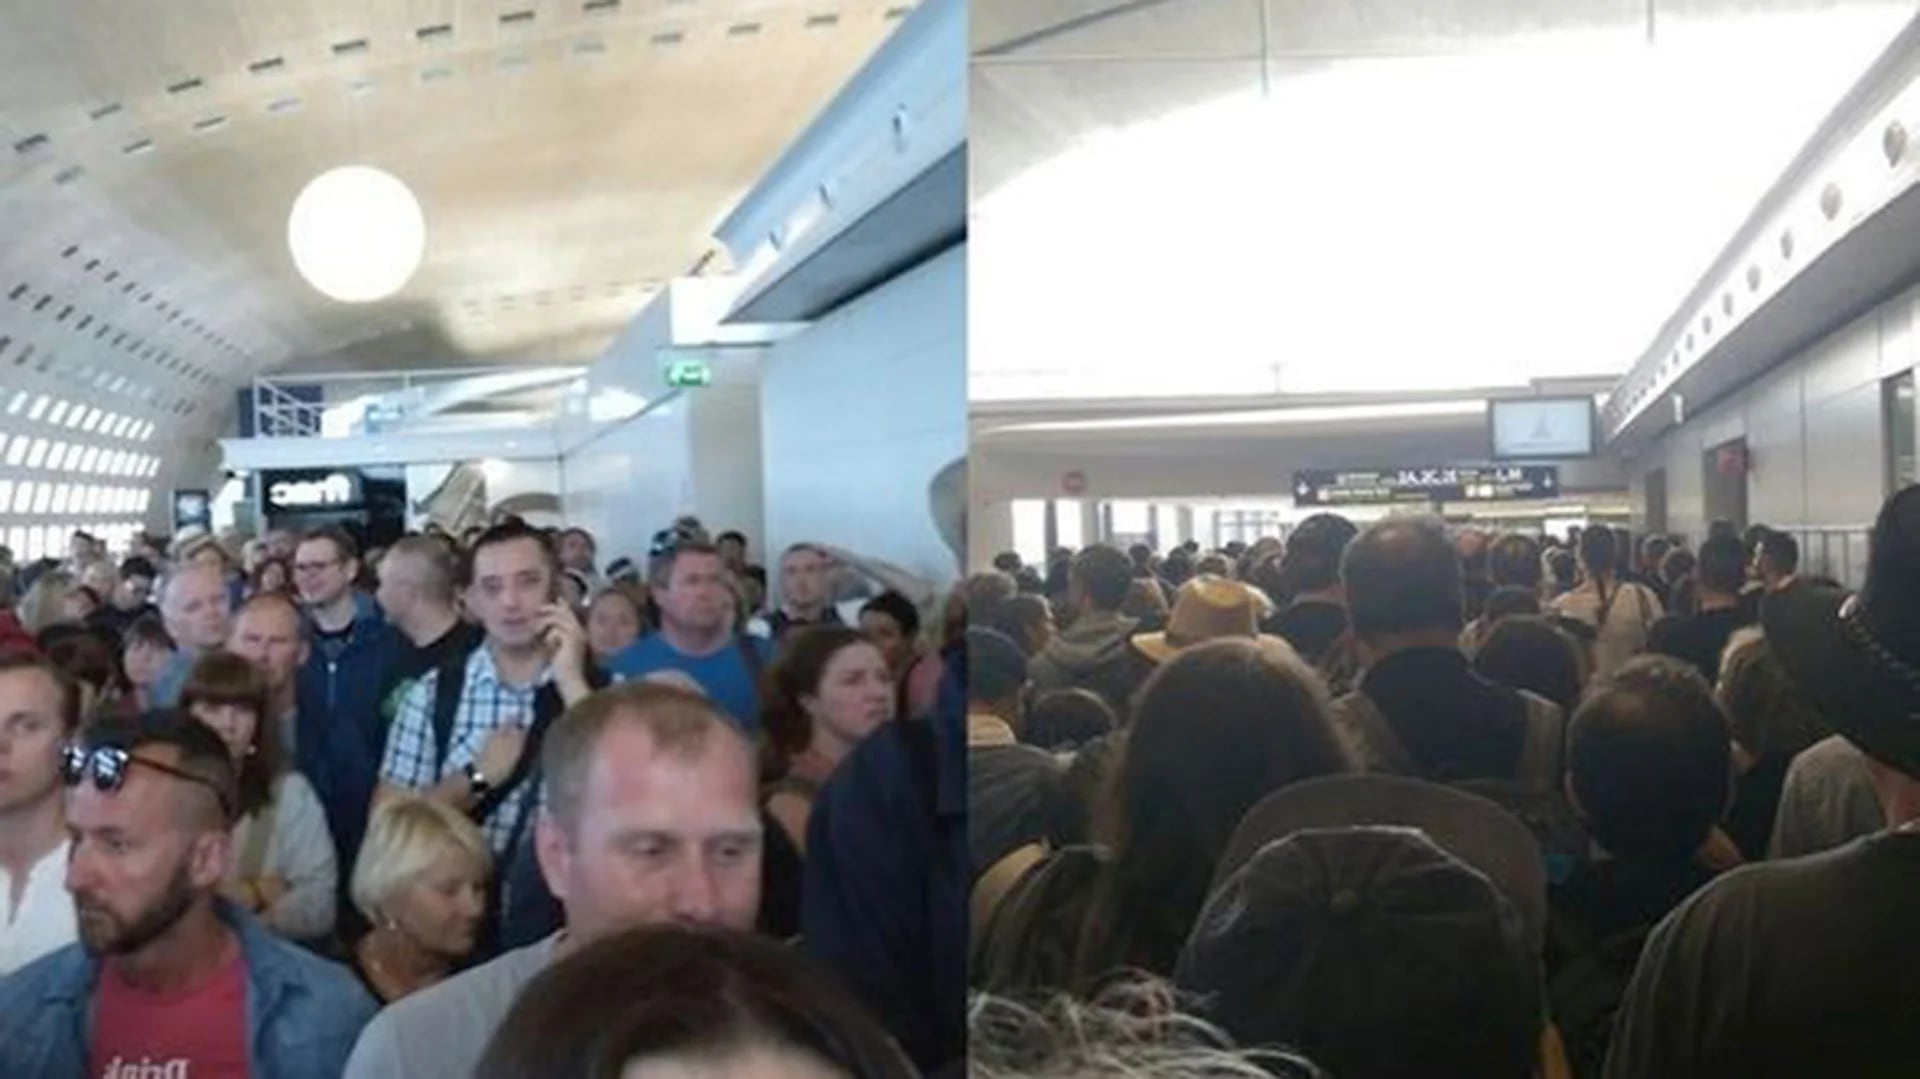 Los pasajeros evacuaron la terminal 2 a pedido de la policía (@MehdiMnaouar)